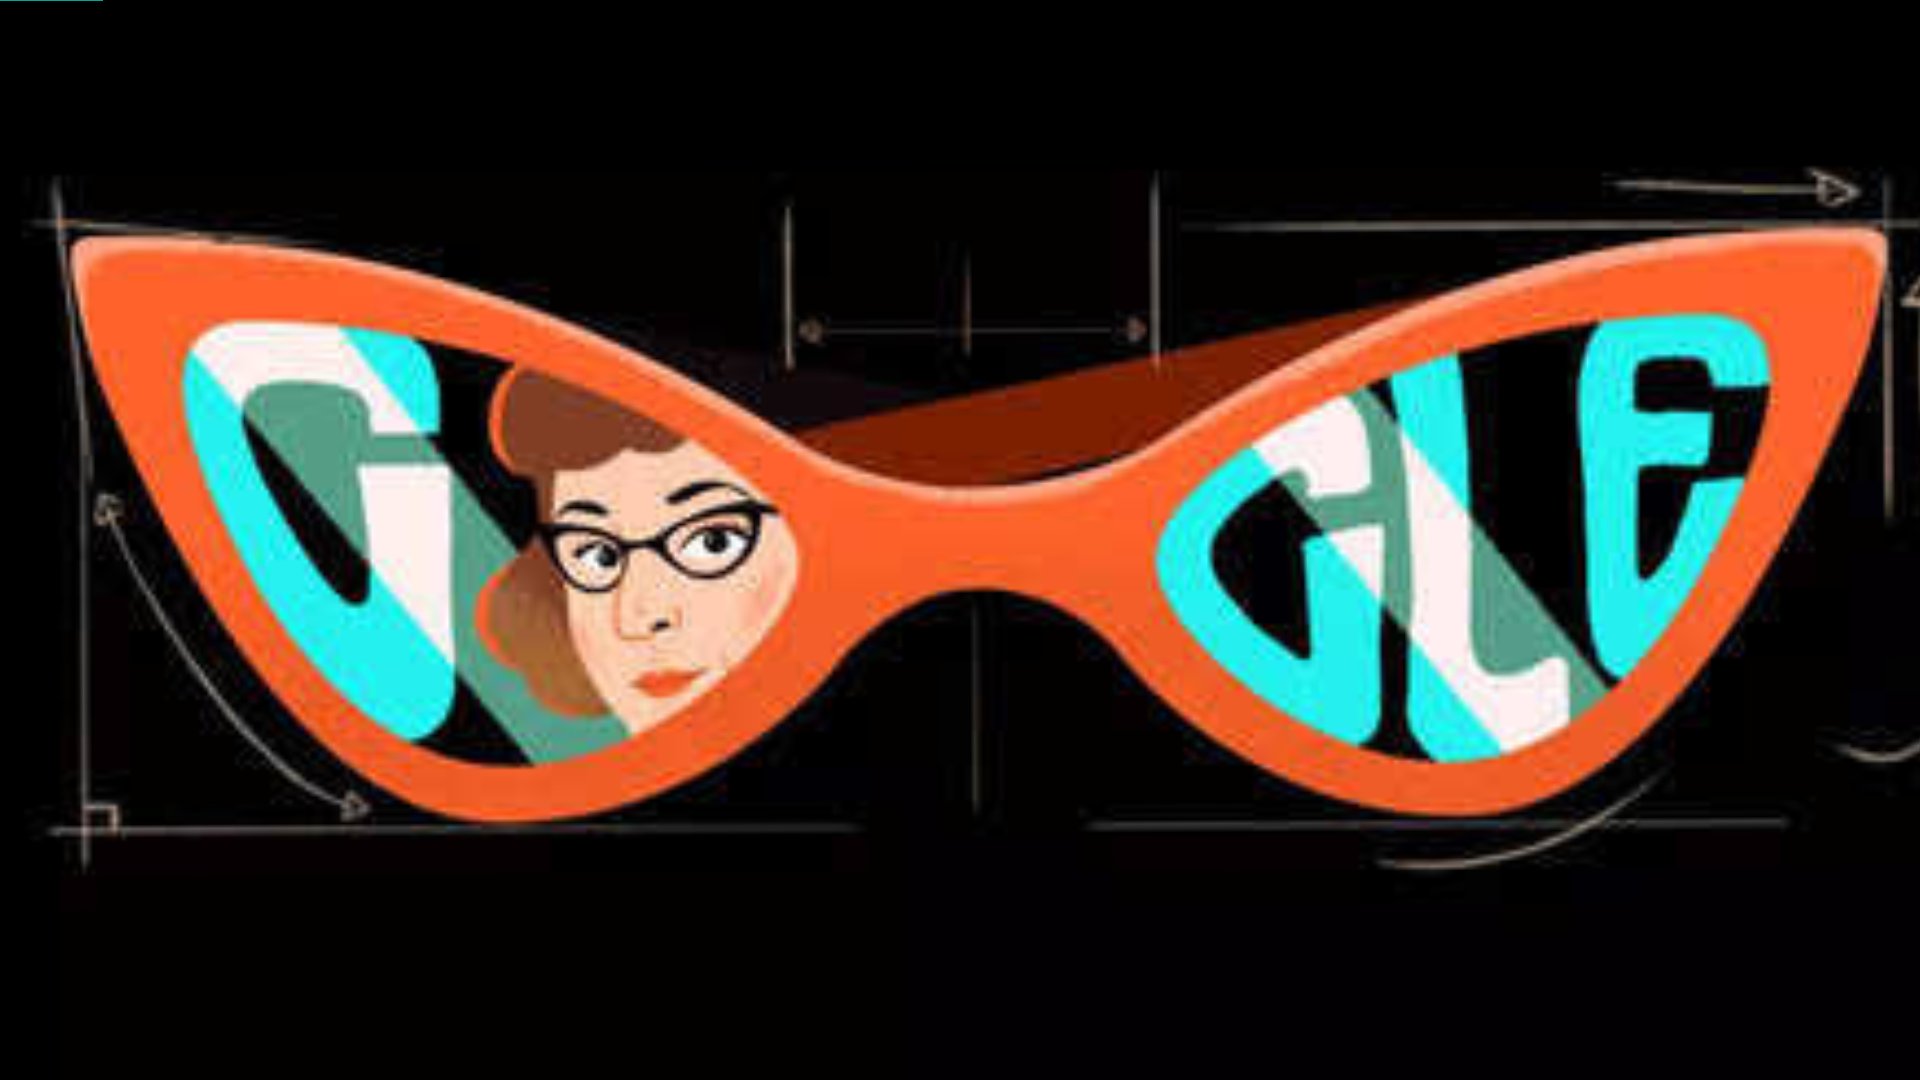 Google Doodle celebrates Altina Schinasi, designer of iconic ‘cat-eye’ eyeglass frame